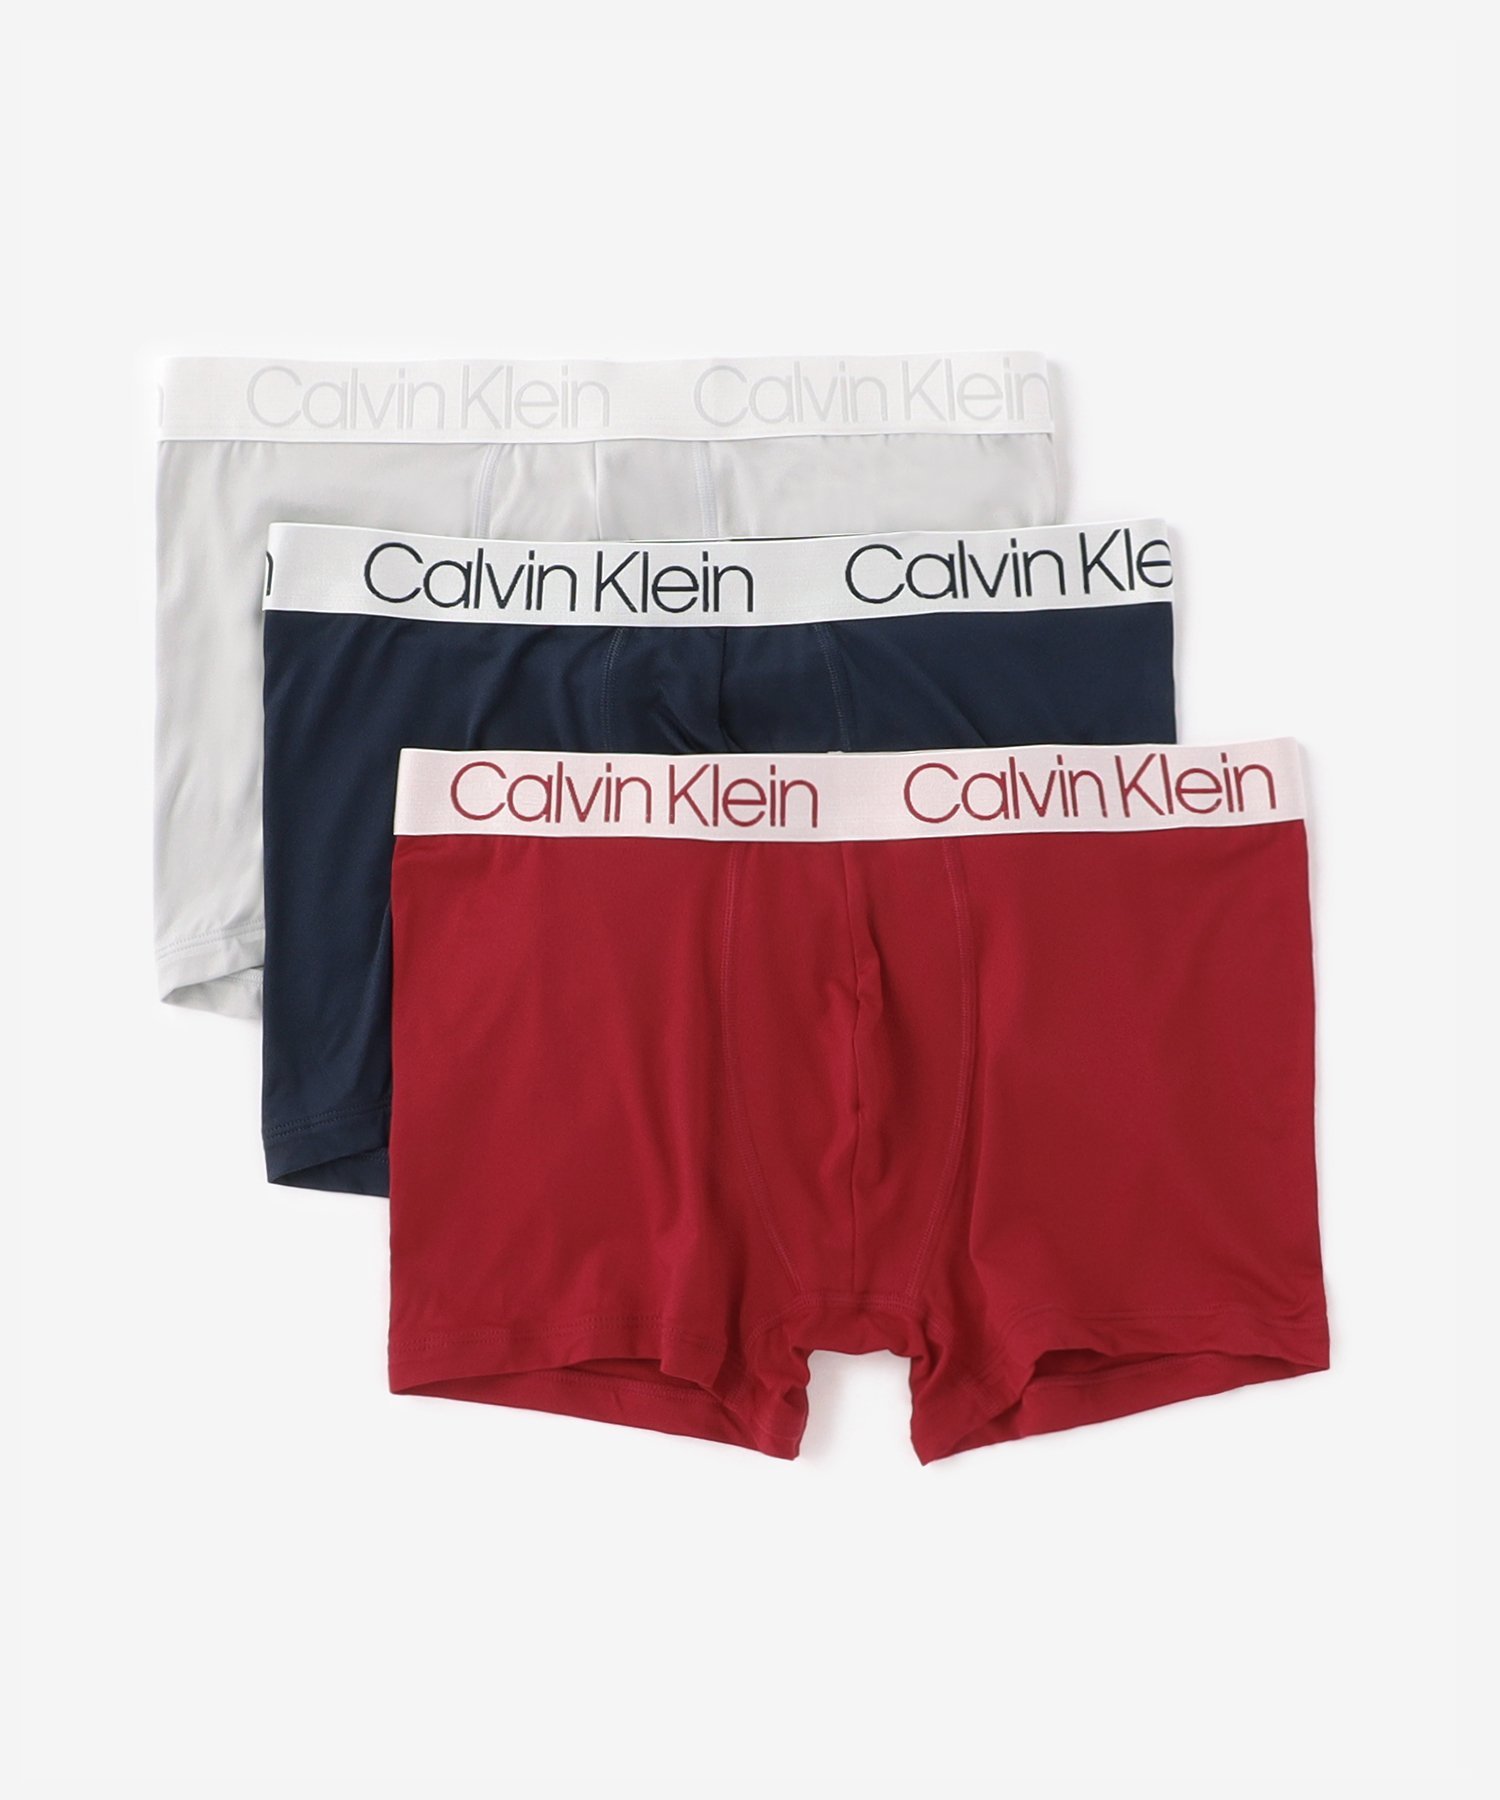 Calvin Klein Underwear (M)【公式ショップ】 カルバンクライン クロマティック ボクサーパンツ 3枚パック Calvin Klein Underwear NP2213O カルバン・クライン インナー・ルームウェア ボクサーパンツ・トランクス ブラック【送料無料】 2